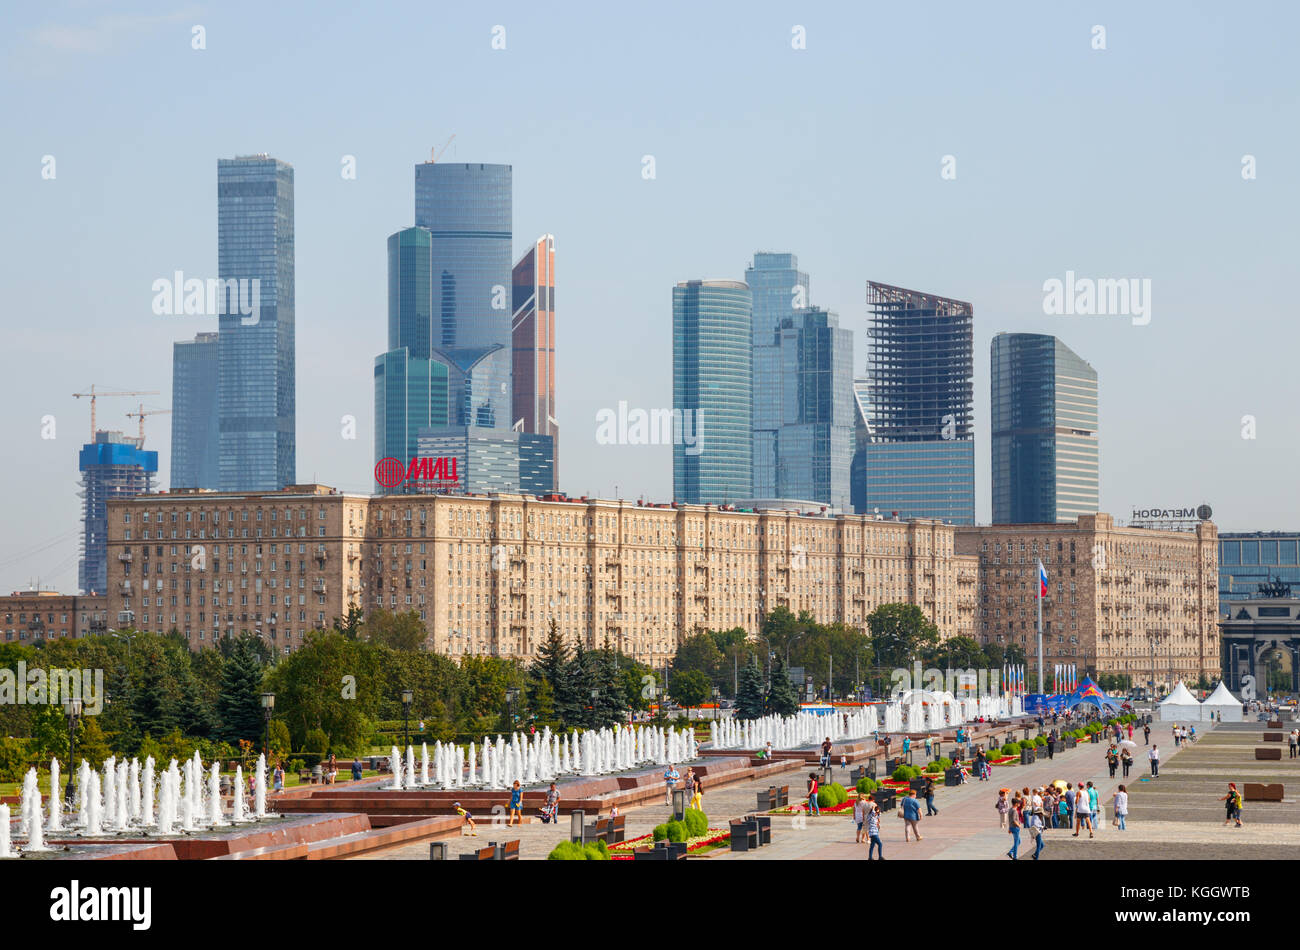 Poklonnaya Hügel, Kutusovkij Prospekt mit Wohnbauten und der Moscow International Business Center (MIBC) im Hintergrund. Moskau, Russland. Stockfoto